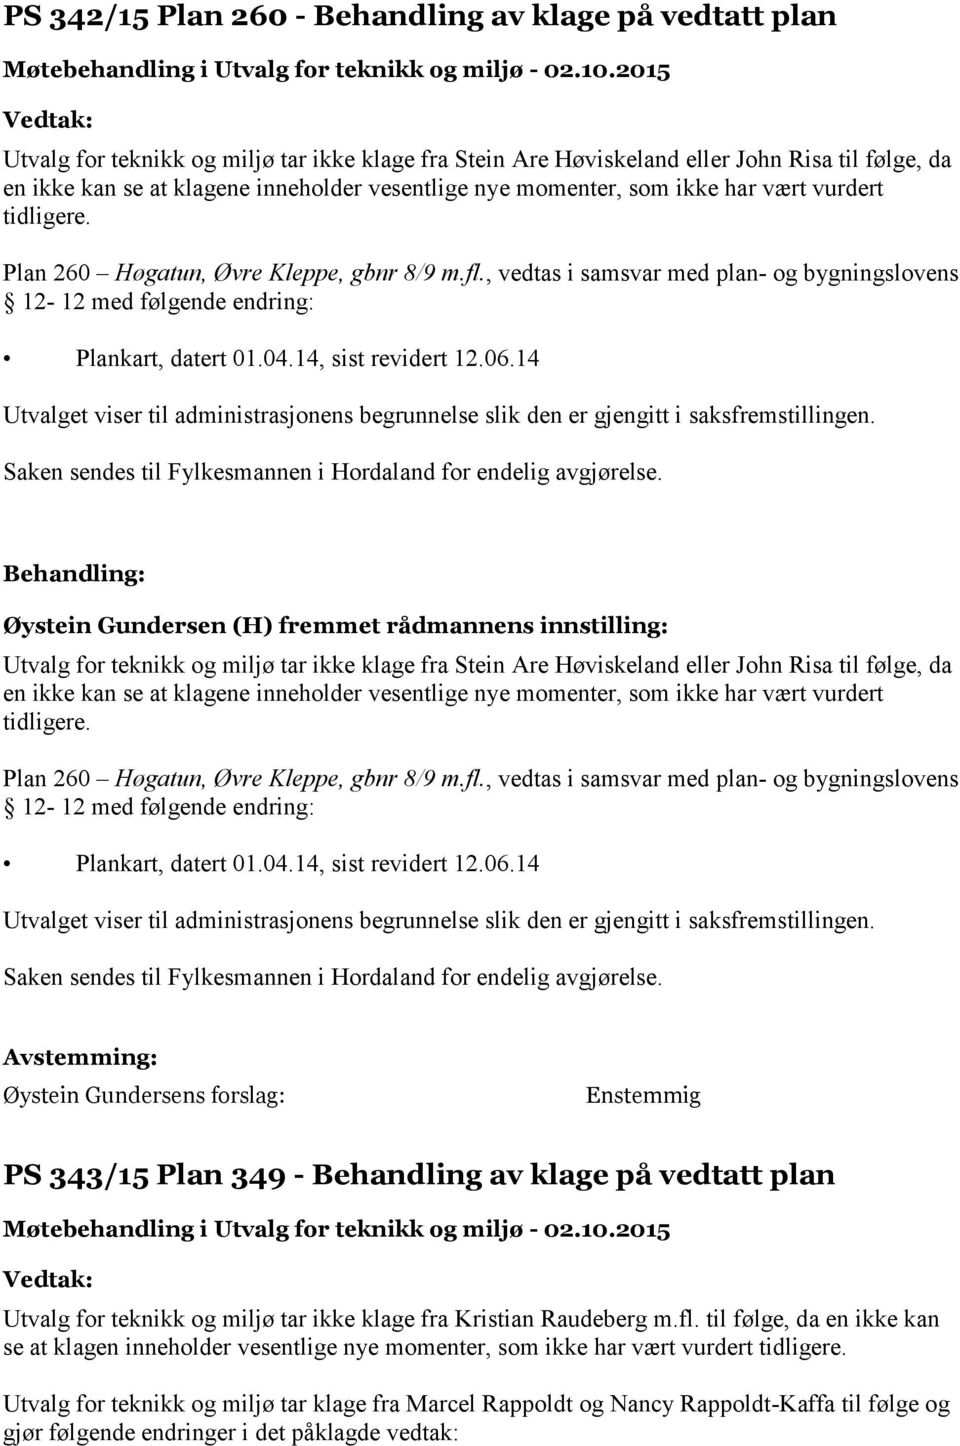 , vedtas i samsvar med plan- og bygningslovens 12-12 med følgende endring: Plankart, datert 01.04.14, sist revidert 12.06.14 Saken sendes til Fylkesmannen i Hordaland for endelig avgjørelse.